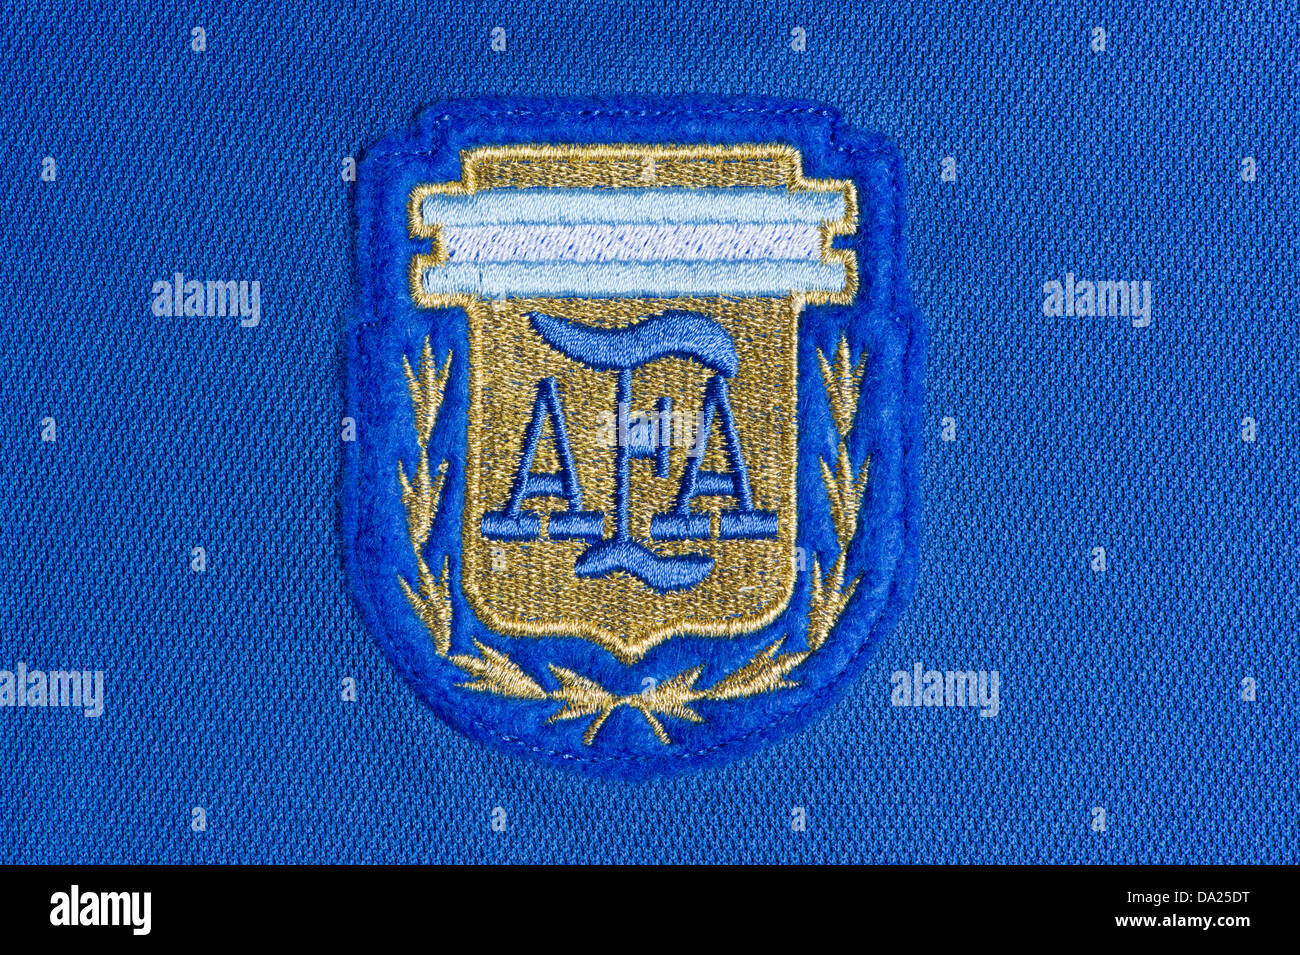 L'insigne de l'Association Argentine football comme vu sur le maillot extérieur 1986 utilisé dans la Coupe du Monde au Mexique (usage éditorial uniquement). Banque D'Images